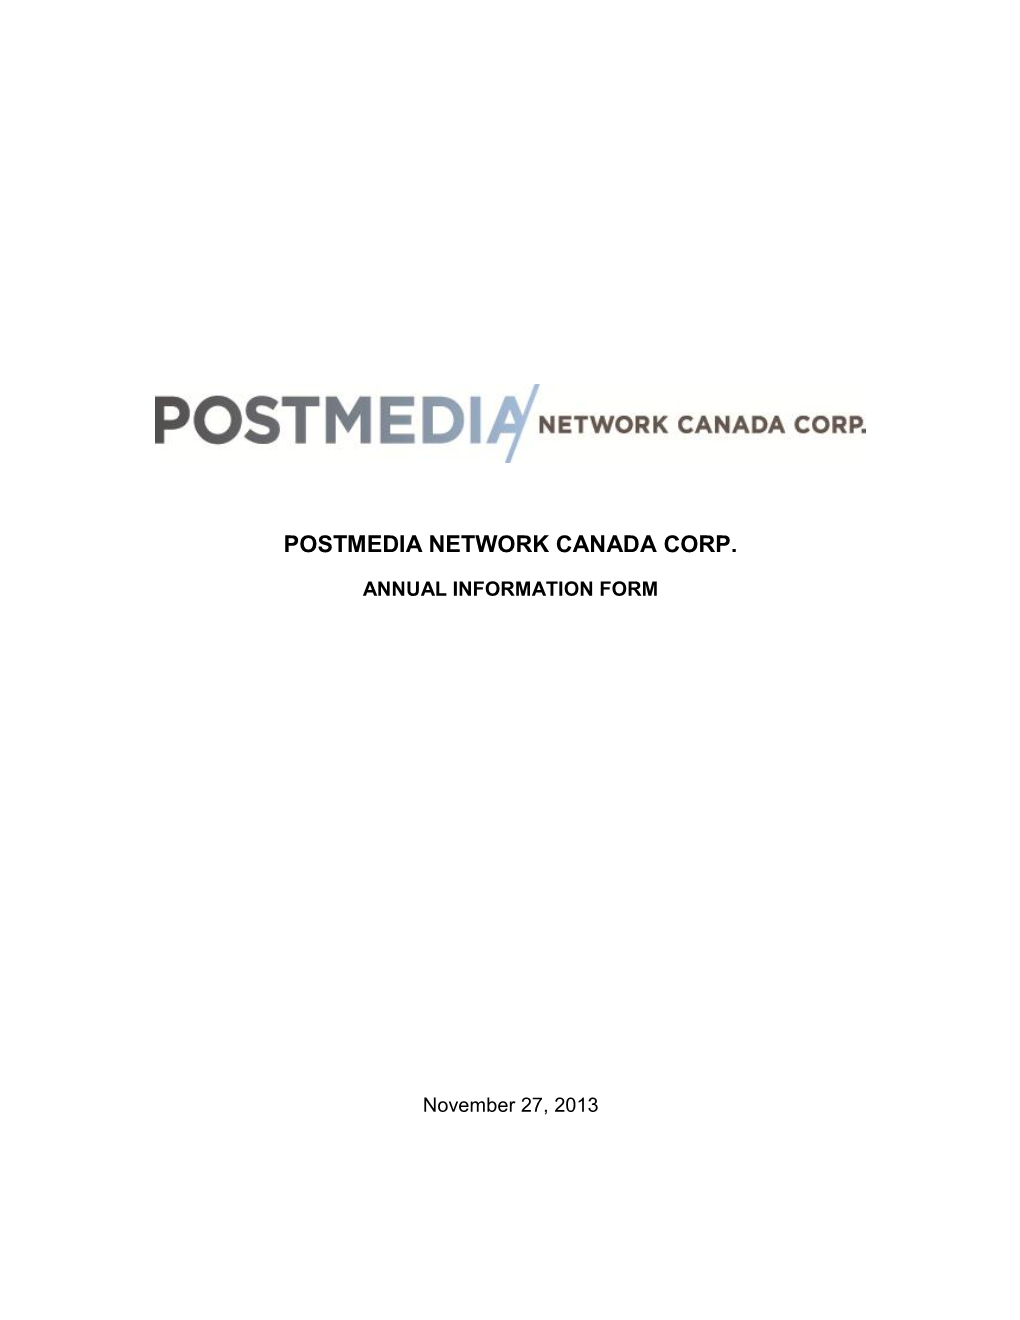 Postmedia Network Canada Corp